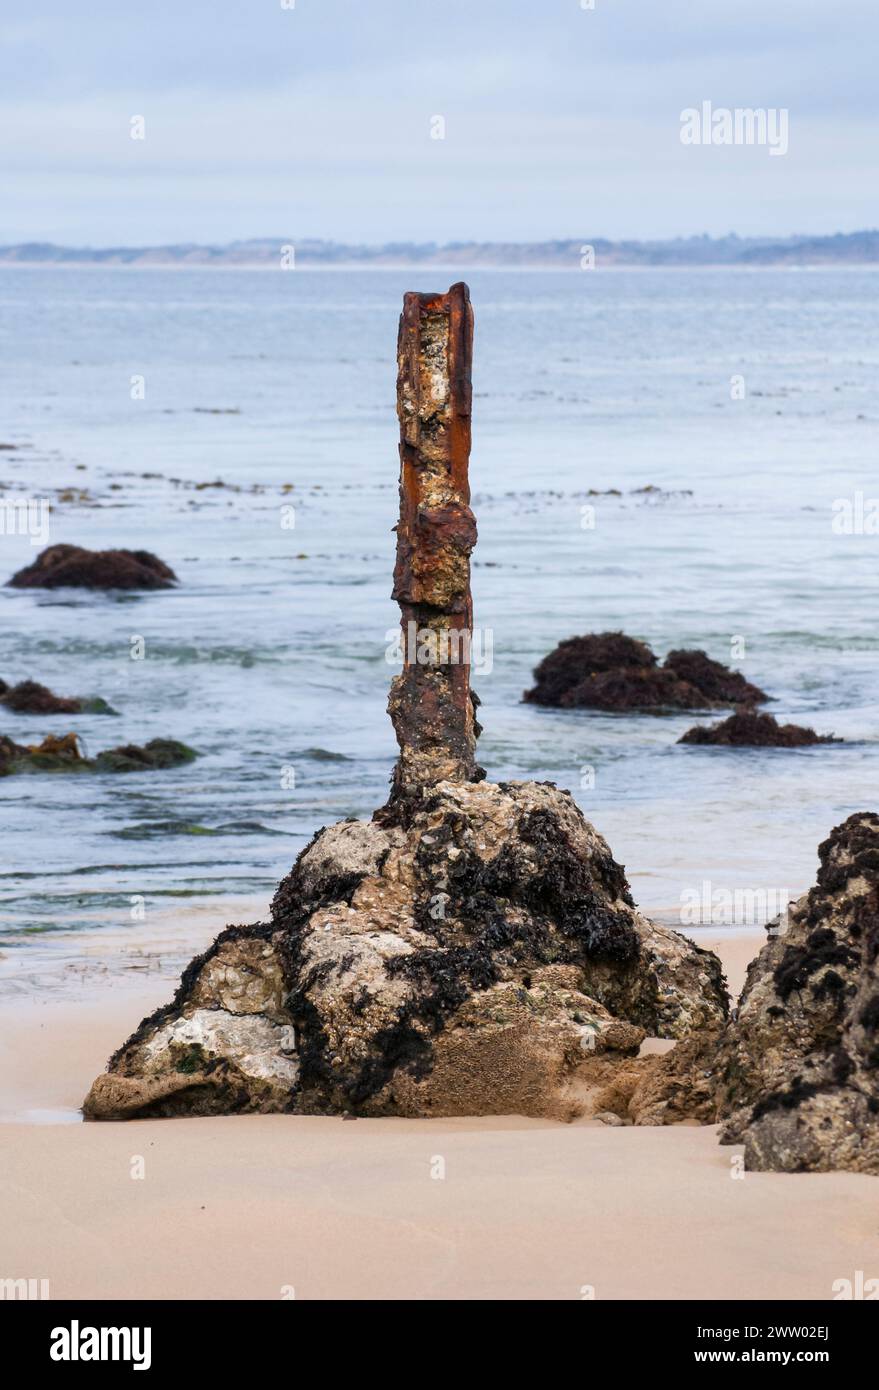 Ein rostiges und korrodiertes Stück einer Konservenanlegestelle steht an einem Strand in Monterey, Kalifornien, entlang der Cannery Row in einer Gruppe von Felsen. Stockfoto